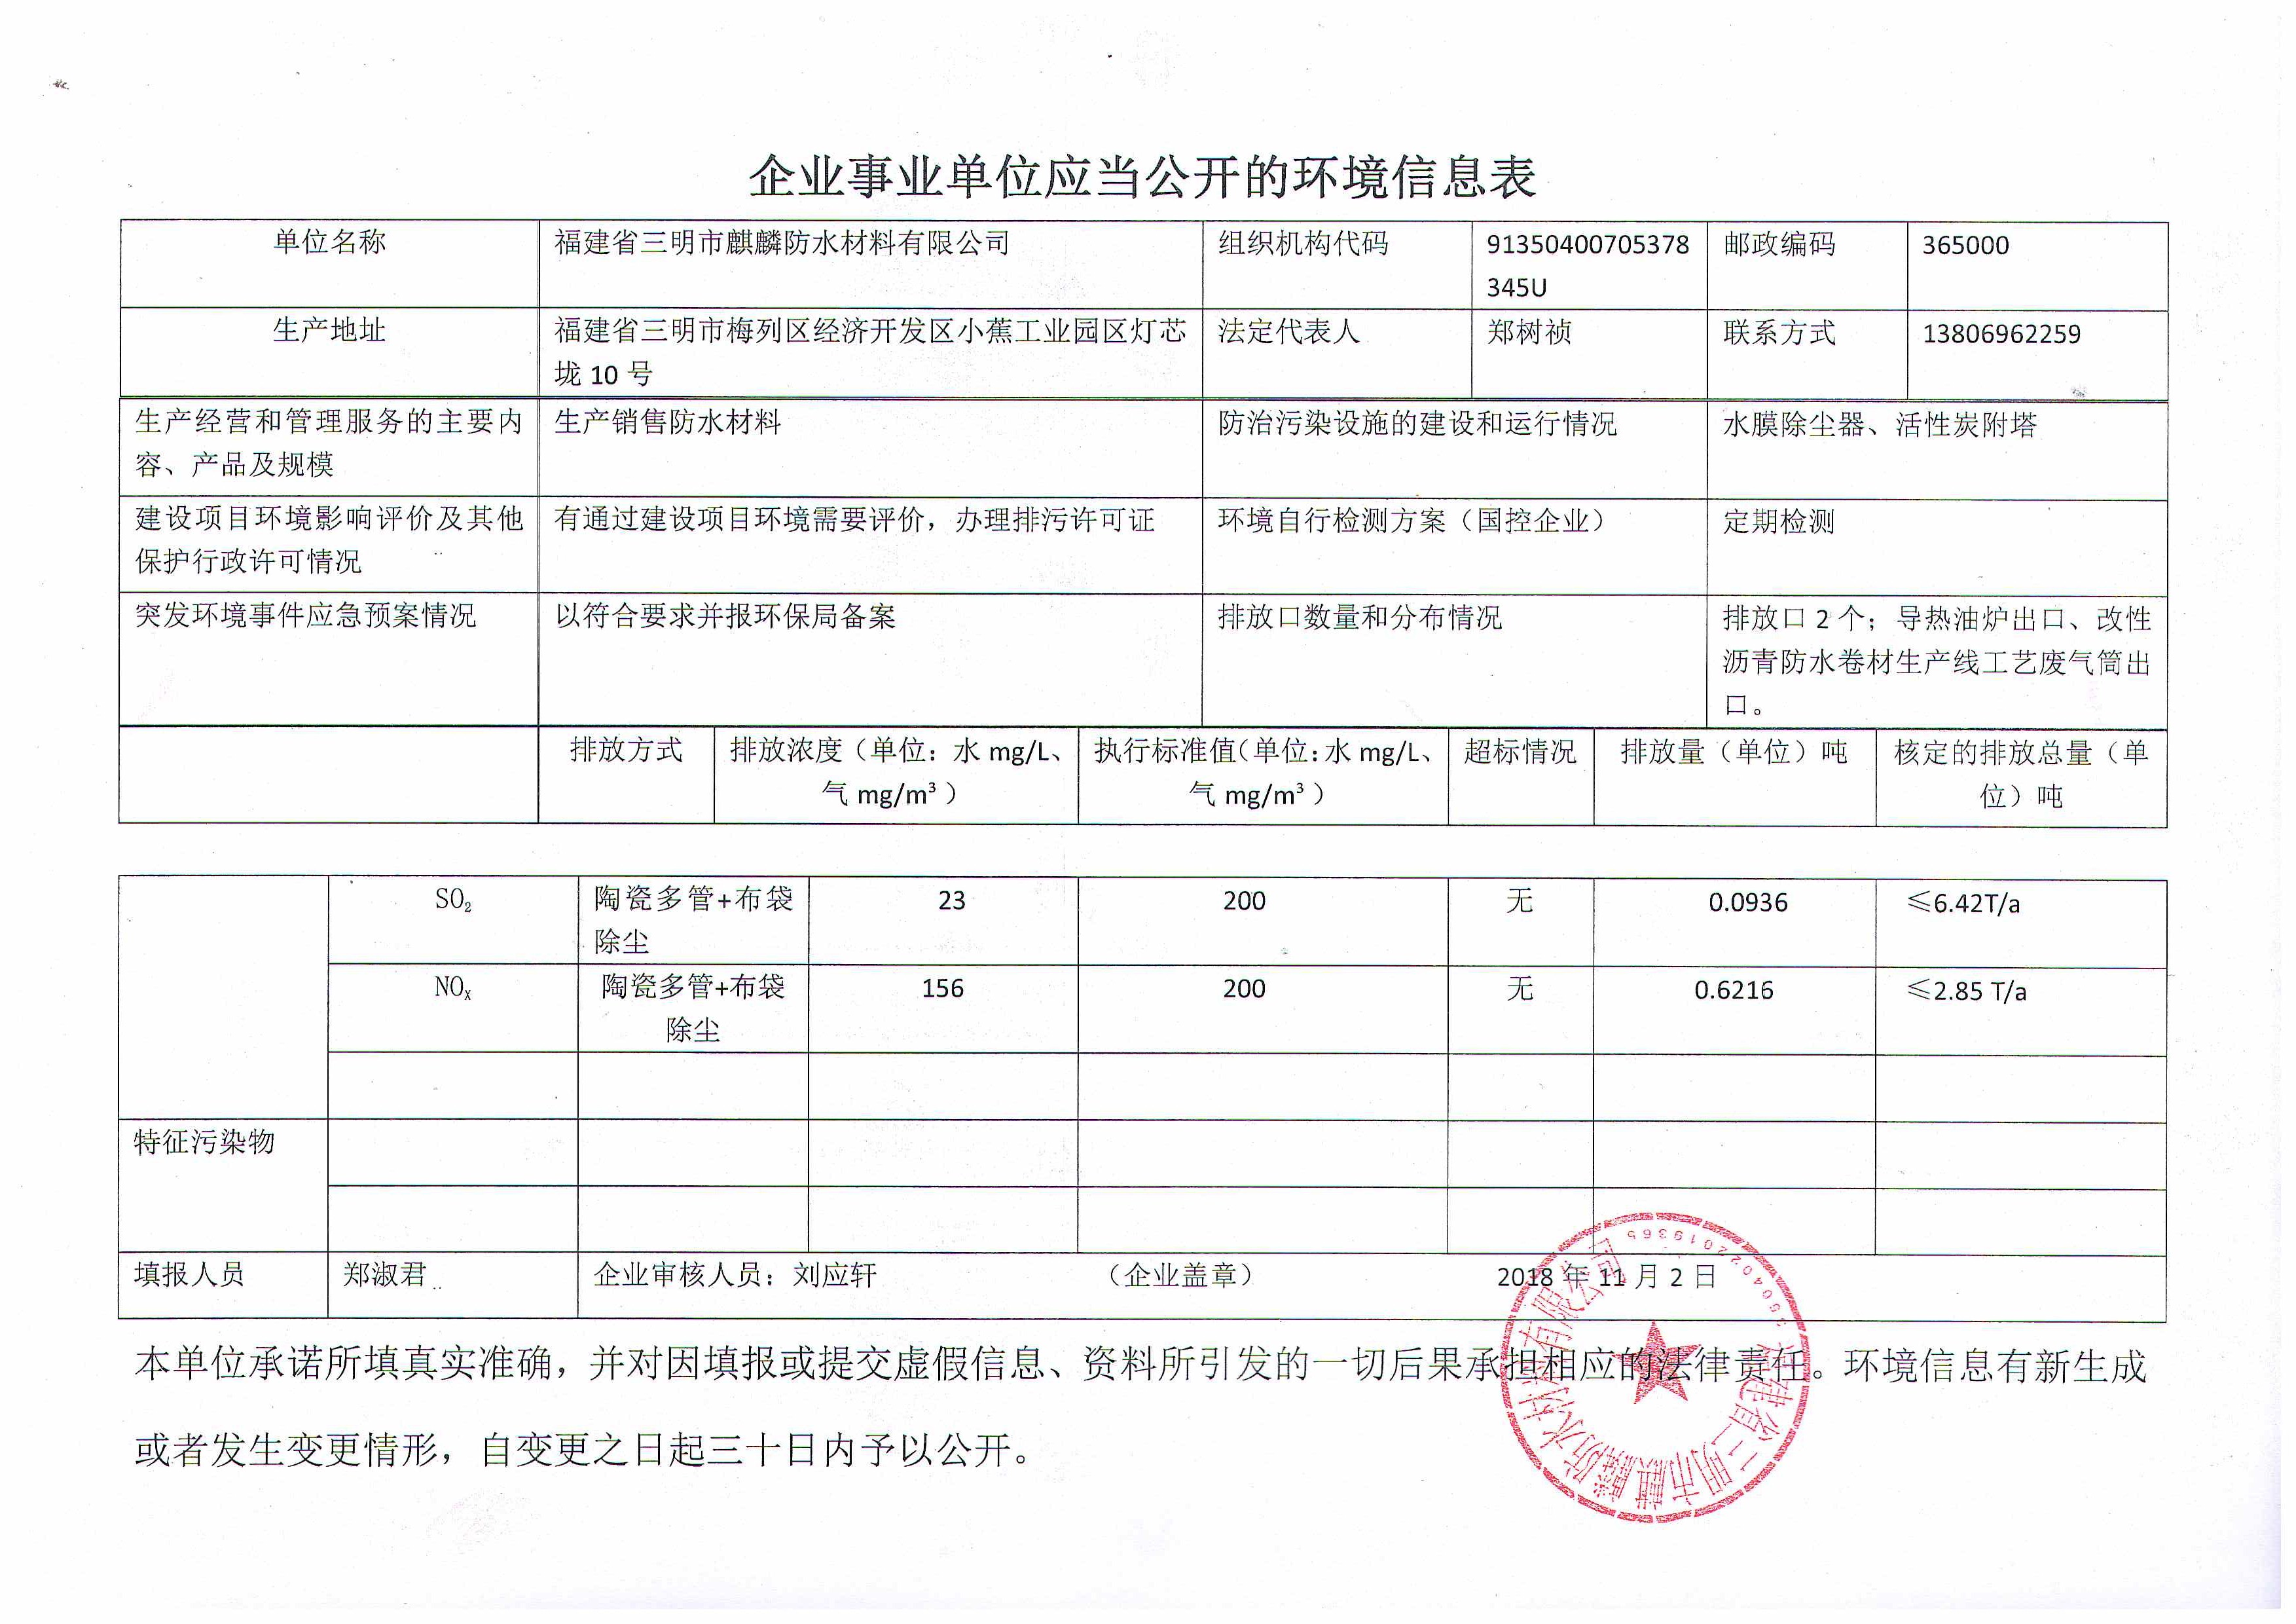 福建省三明市麒麟防水材料有限公司環境信息表